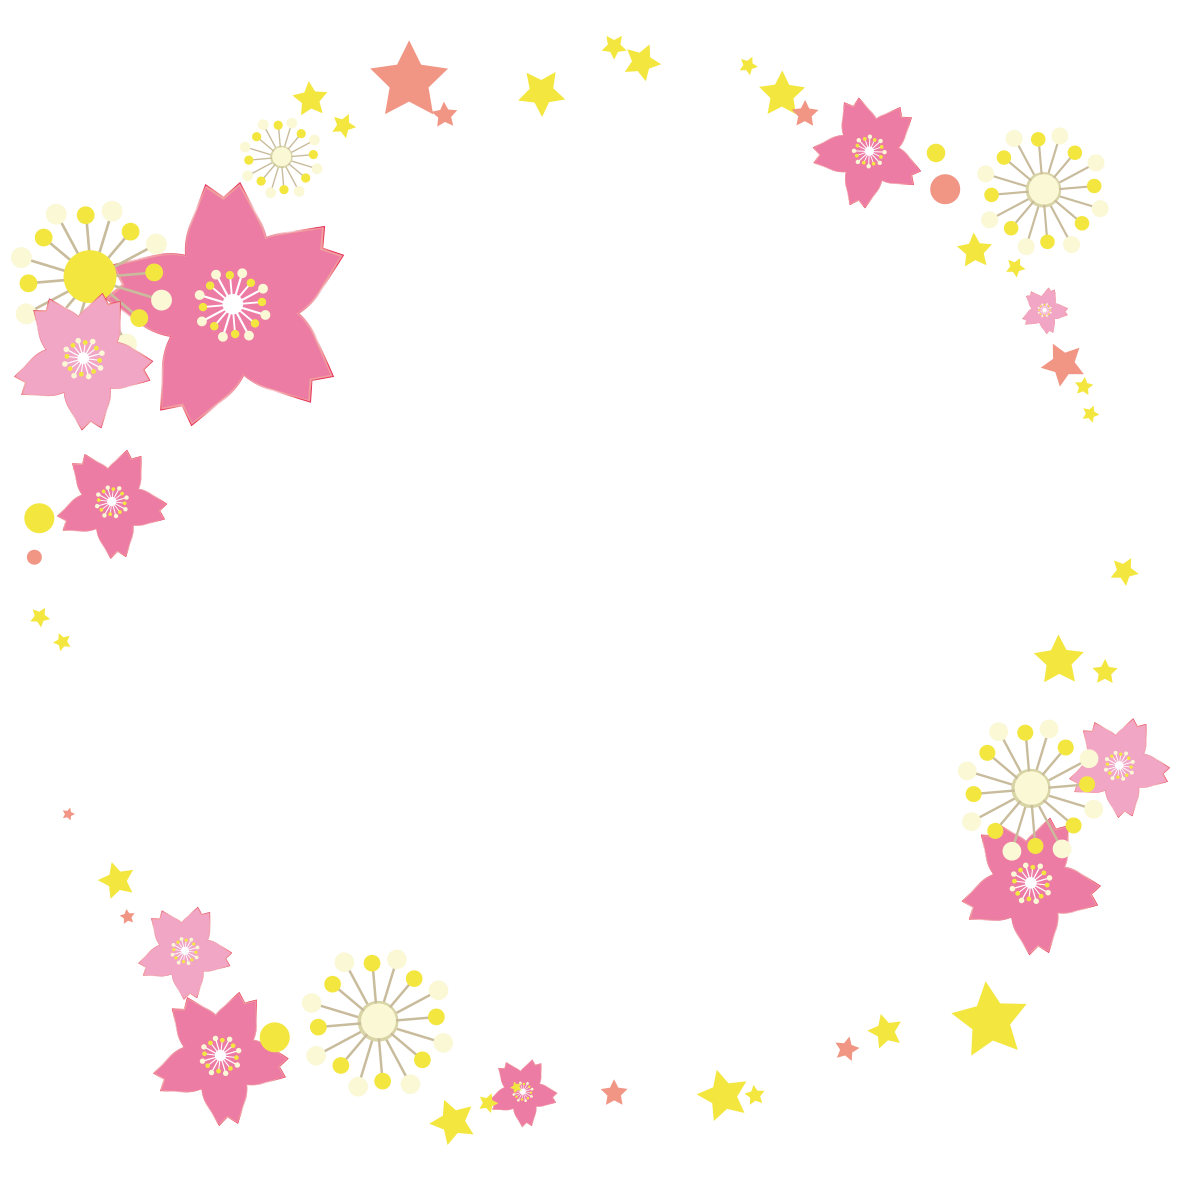 大きな桜の花と散りばめられた星模様がかわいらしい円フレームです。
春の希望に満ち、キラキラとした季節の雰囲気が伝わってきますね☆<br>
ピンクとイエローの組み合わせはとってもキュートなので、お子様向けのお便りへのご利用もオススメしています♡